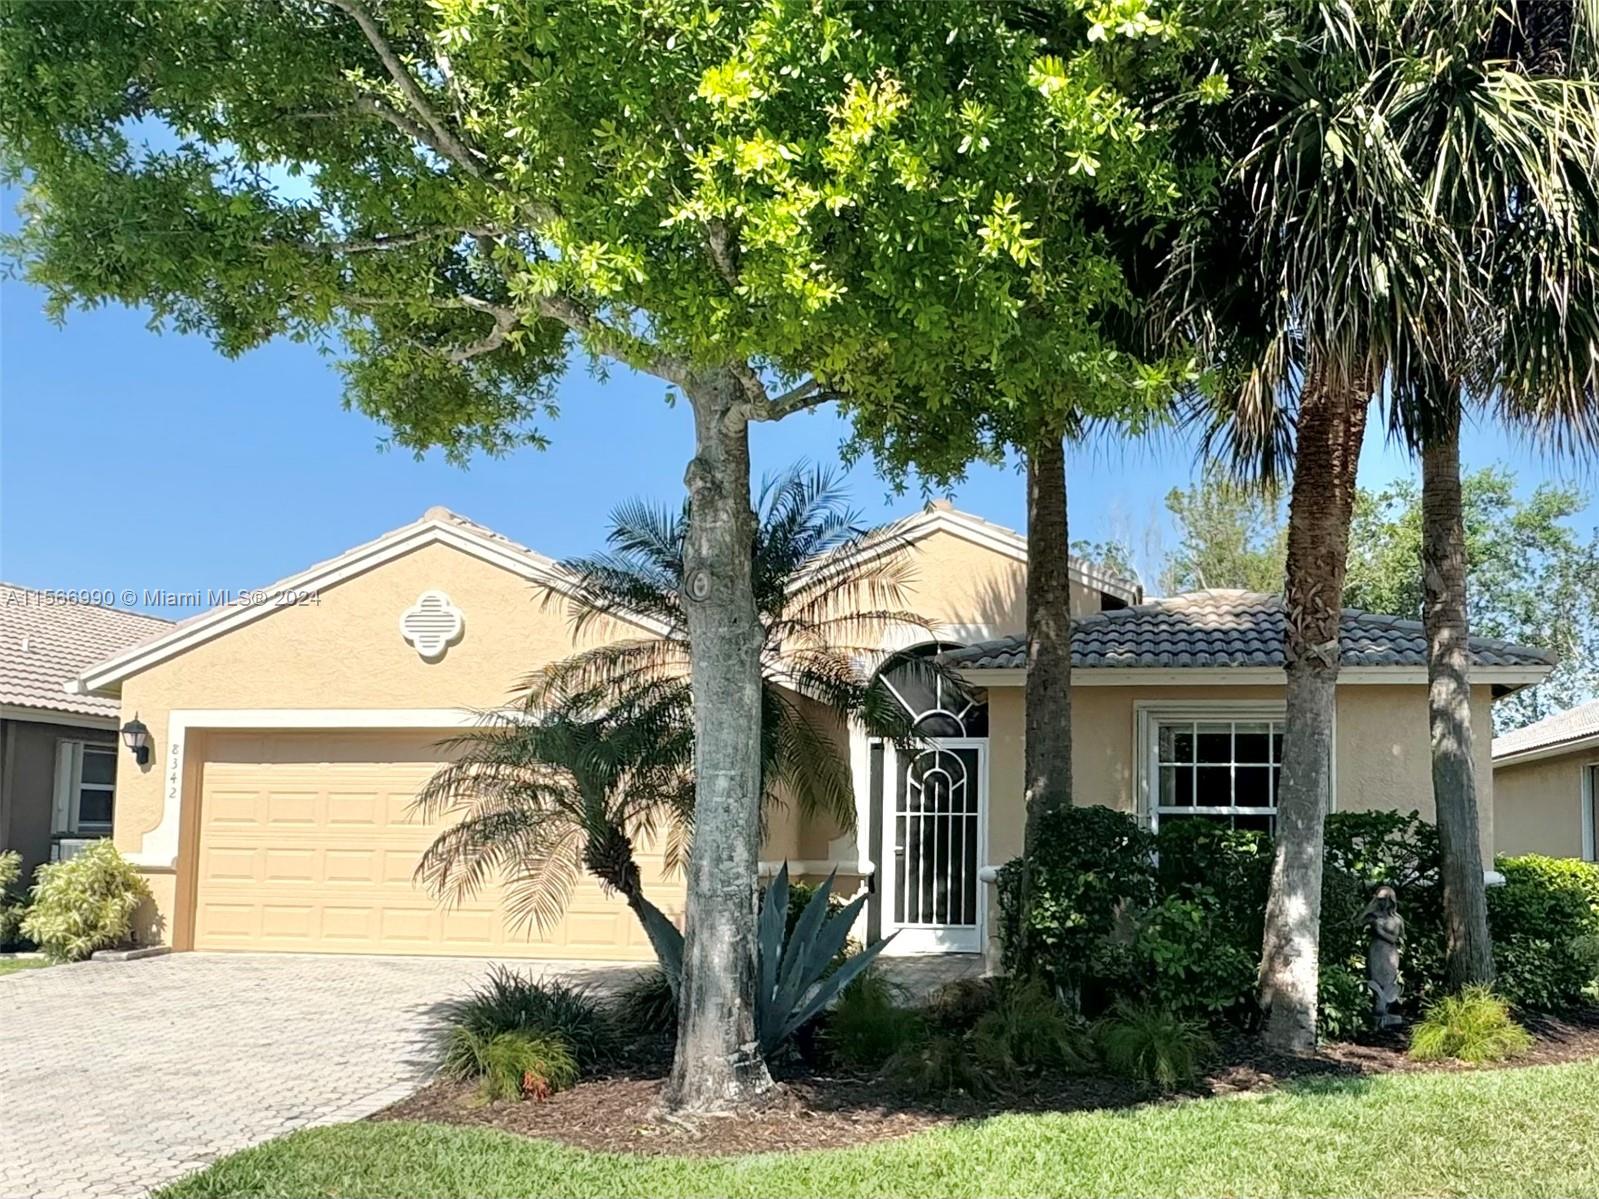 Property for Sale at 8342 Duomo Cir Cir, Boynton Beach, Palm Beach County, Florida - Bedrooms: 3 
Bathrooms: 3  - $535,000